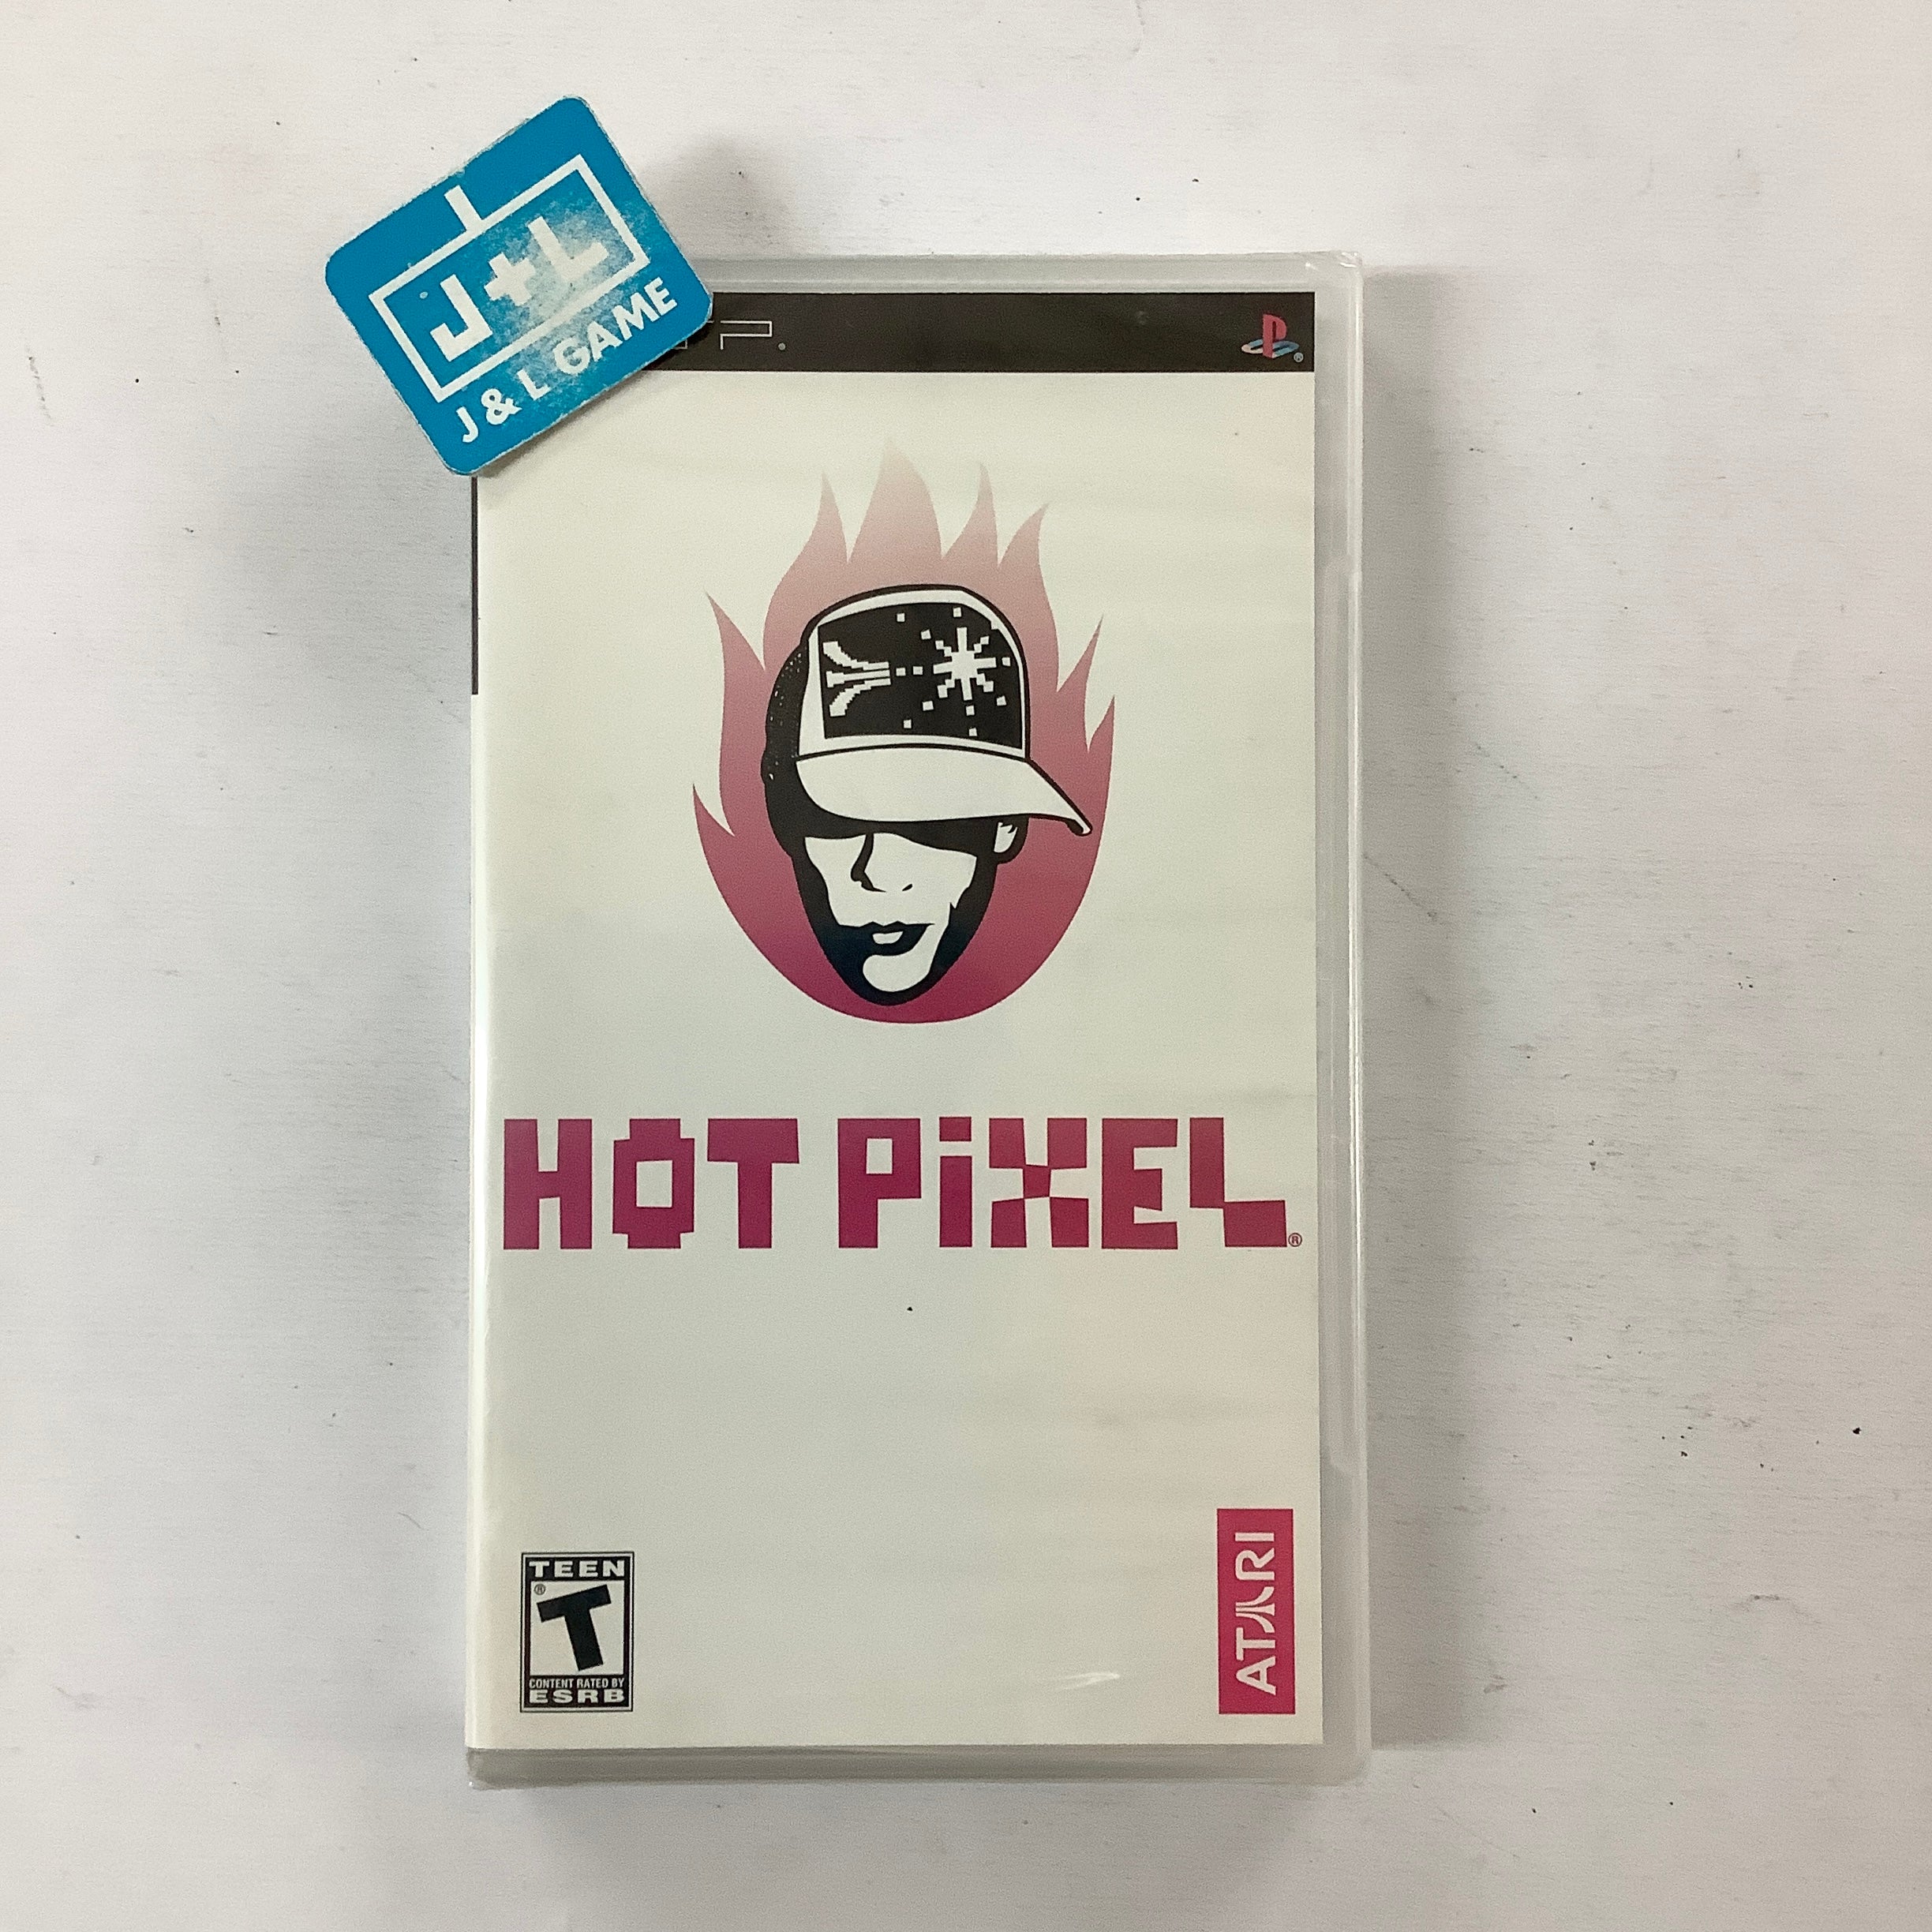 Hot Pixel - Sony PSP Video Games Atari SA   